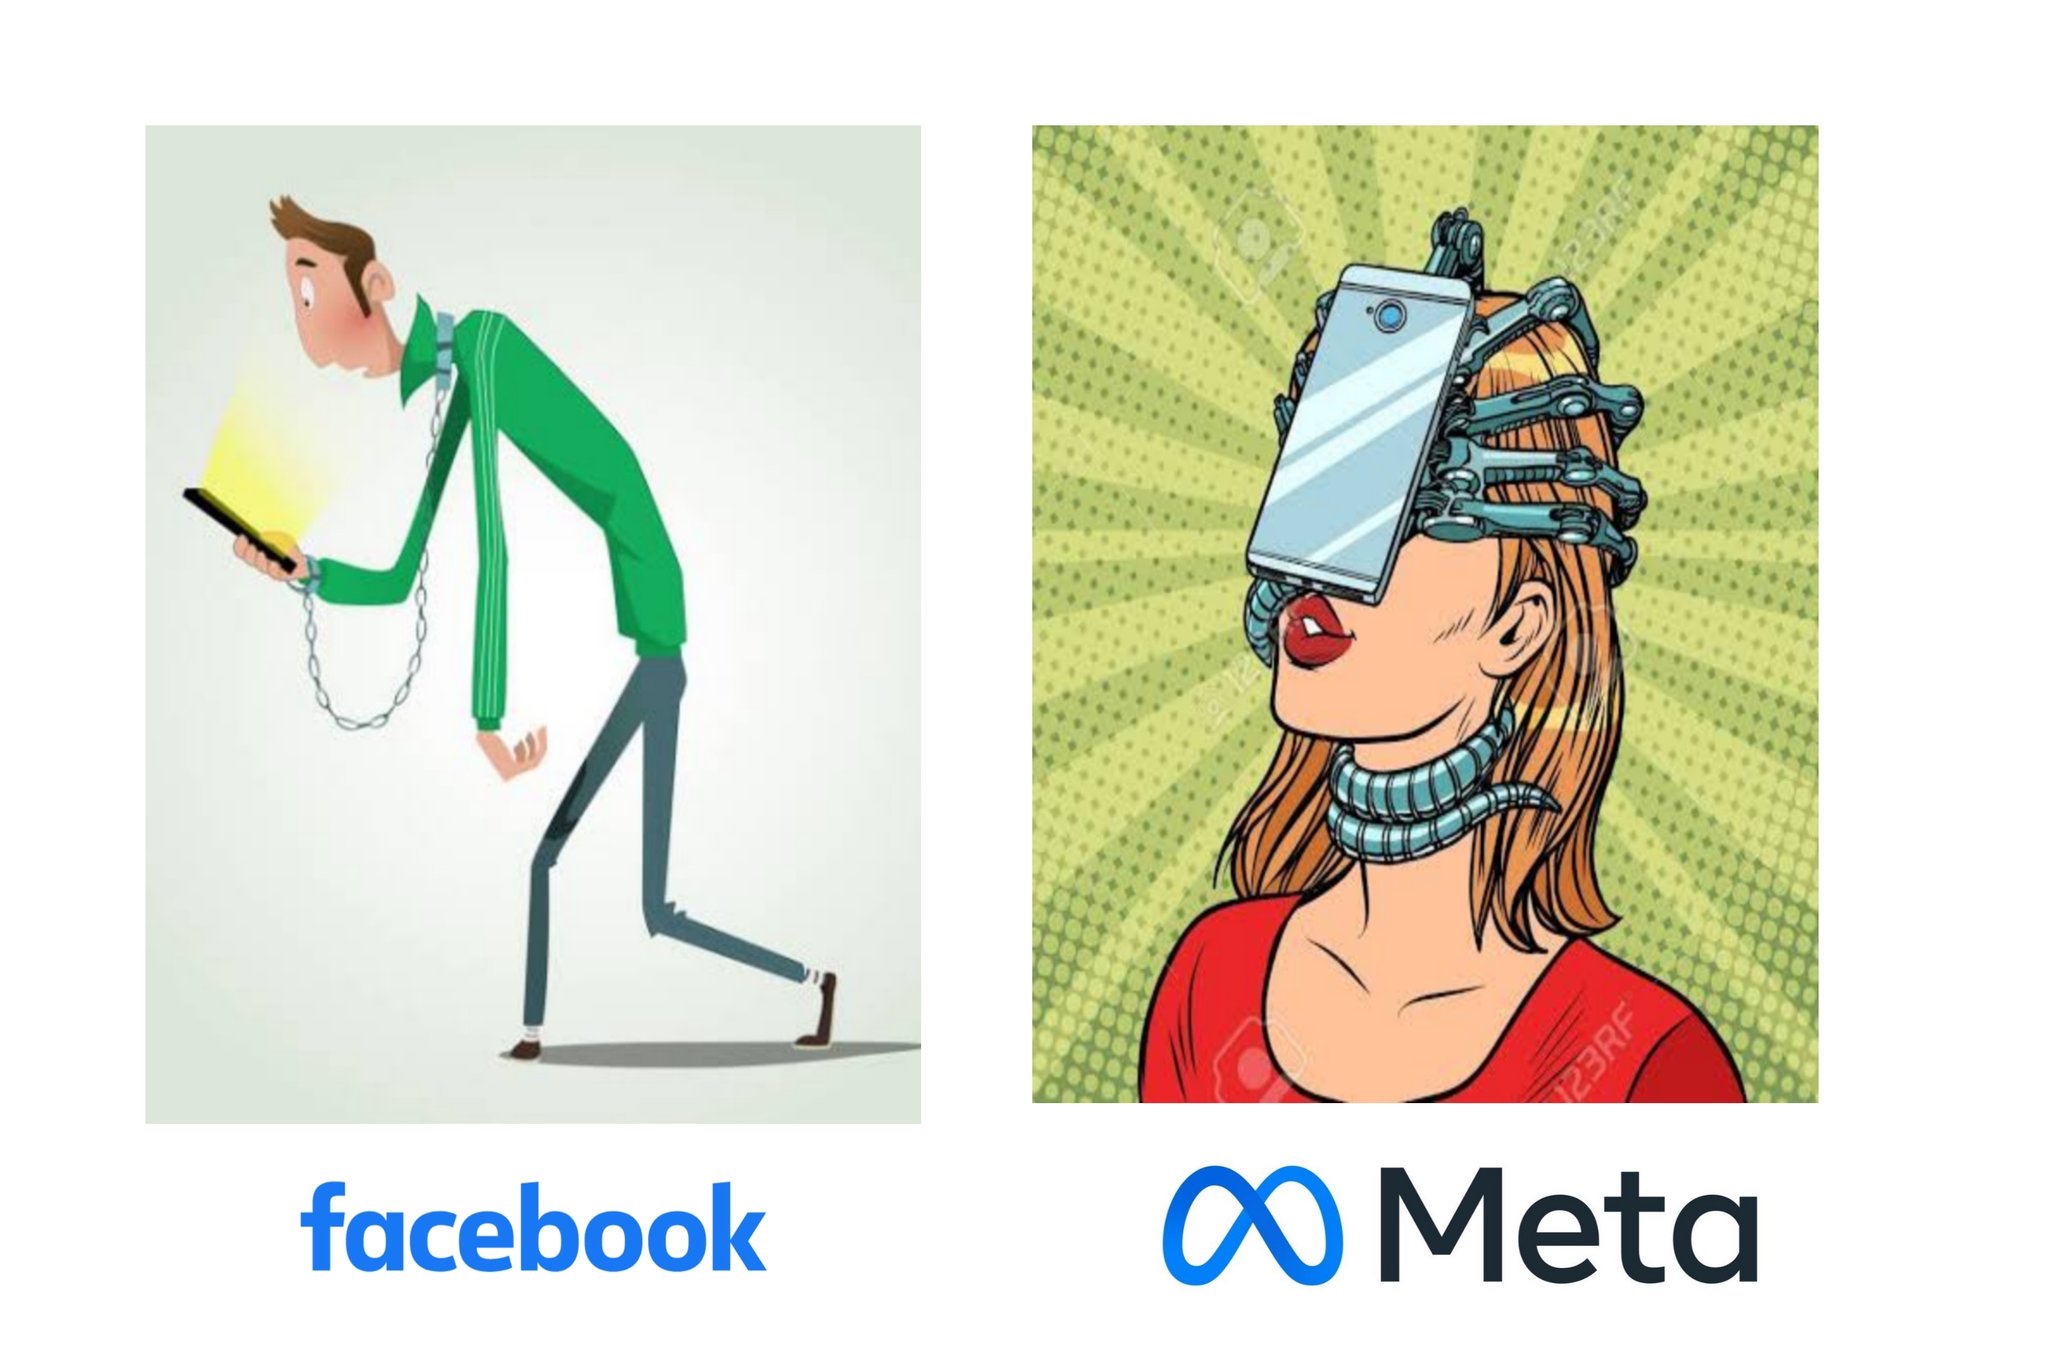 Facebook vs Meta meme